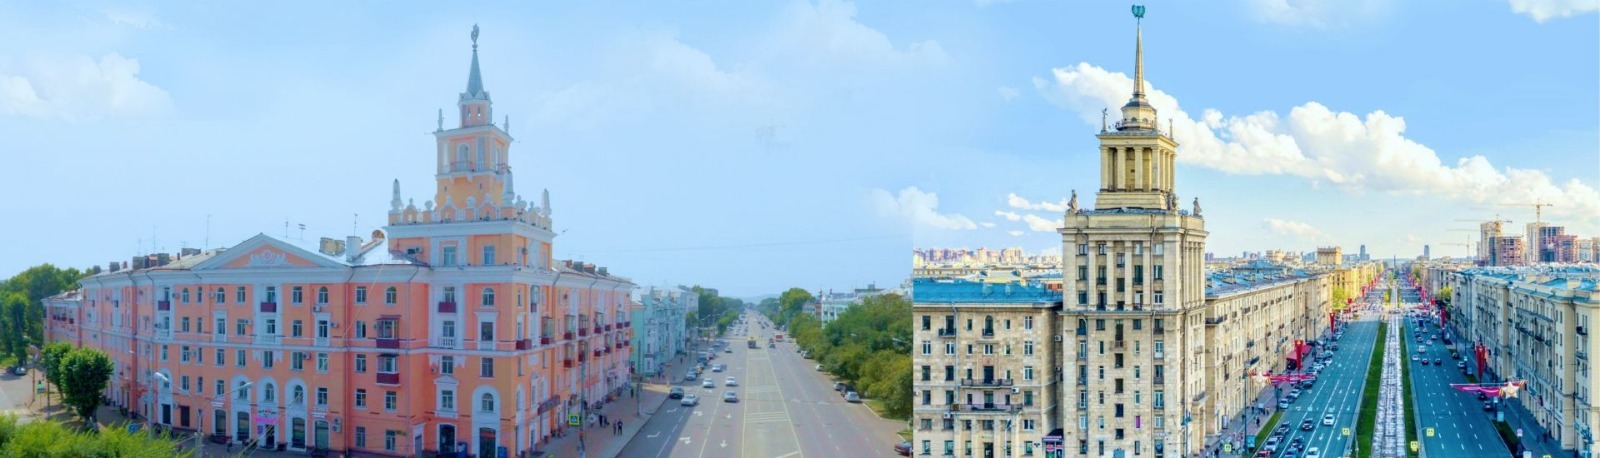 Комсомольск-Санкт-Петербург. Точки соприкосновения